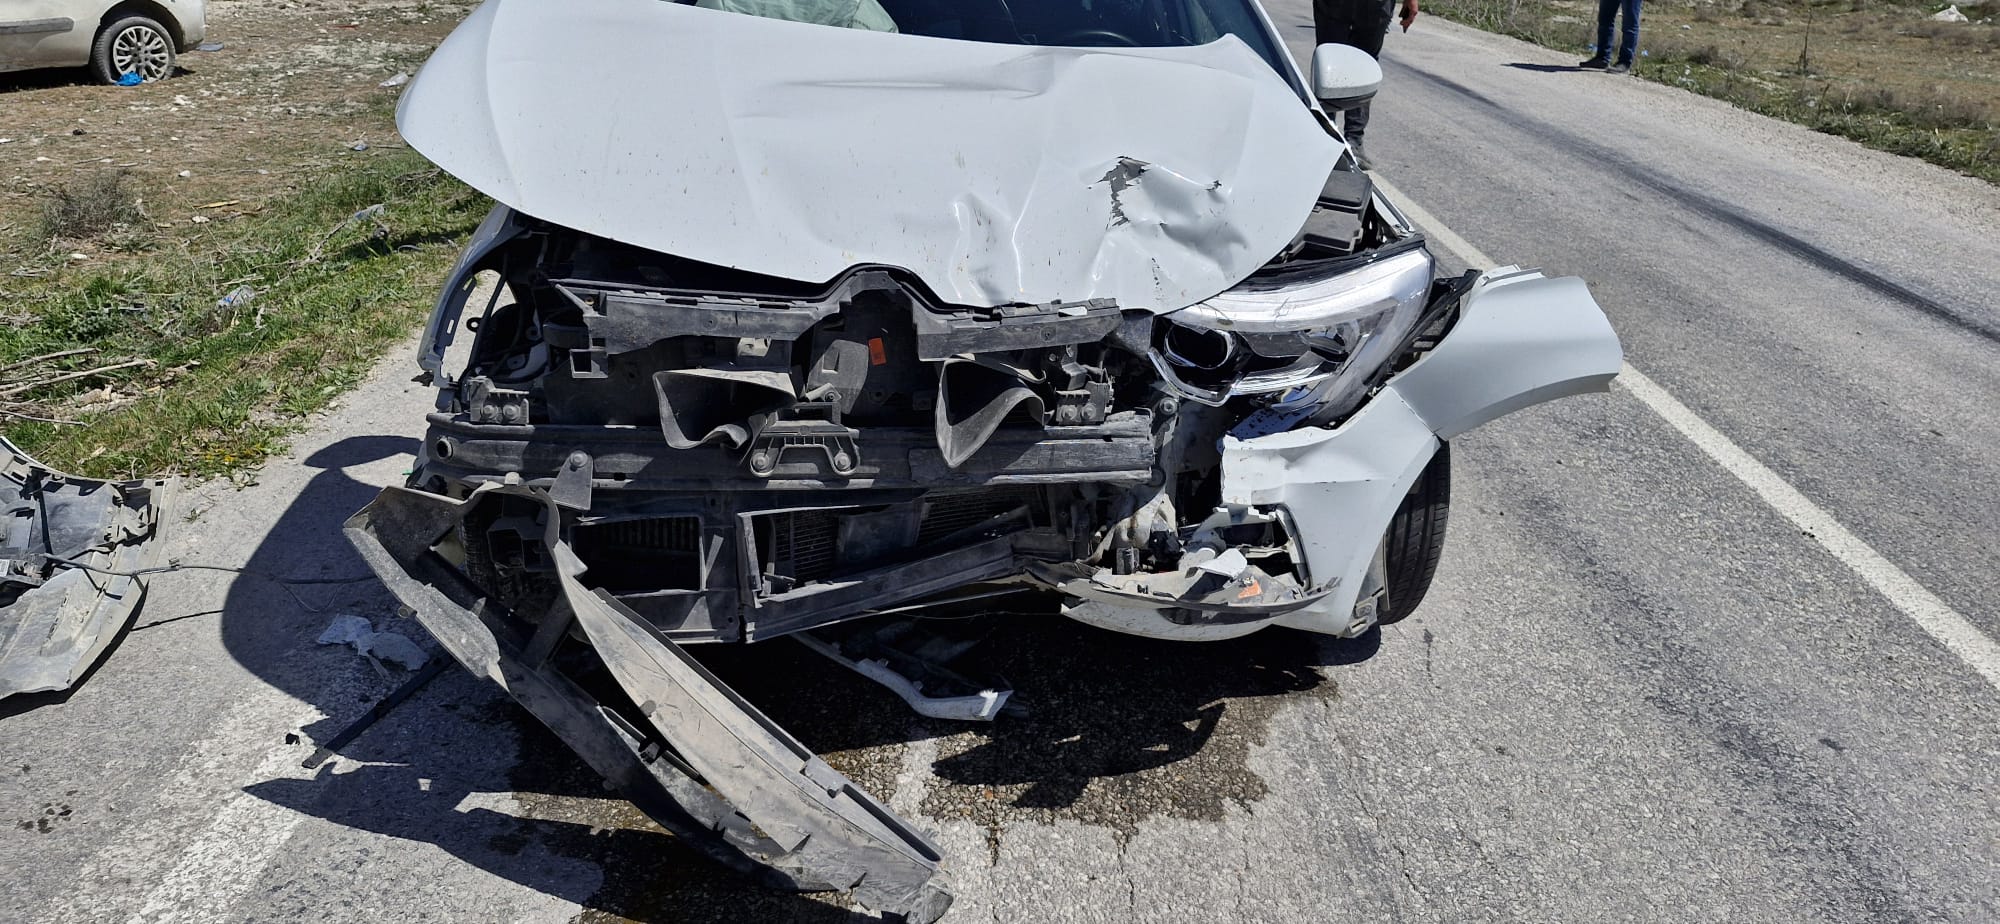 Sazlıpınar'da trafik kazası:1 yaralı